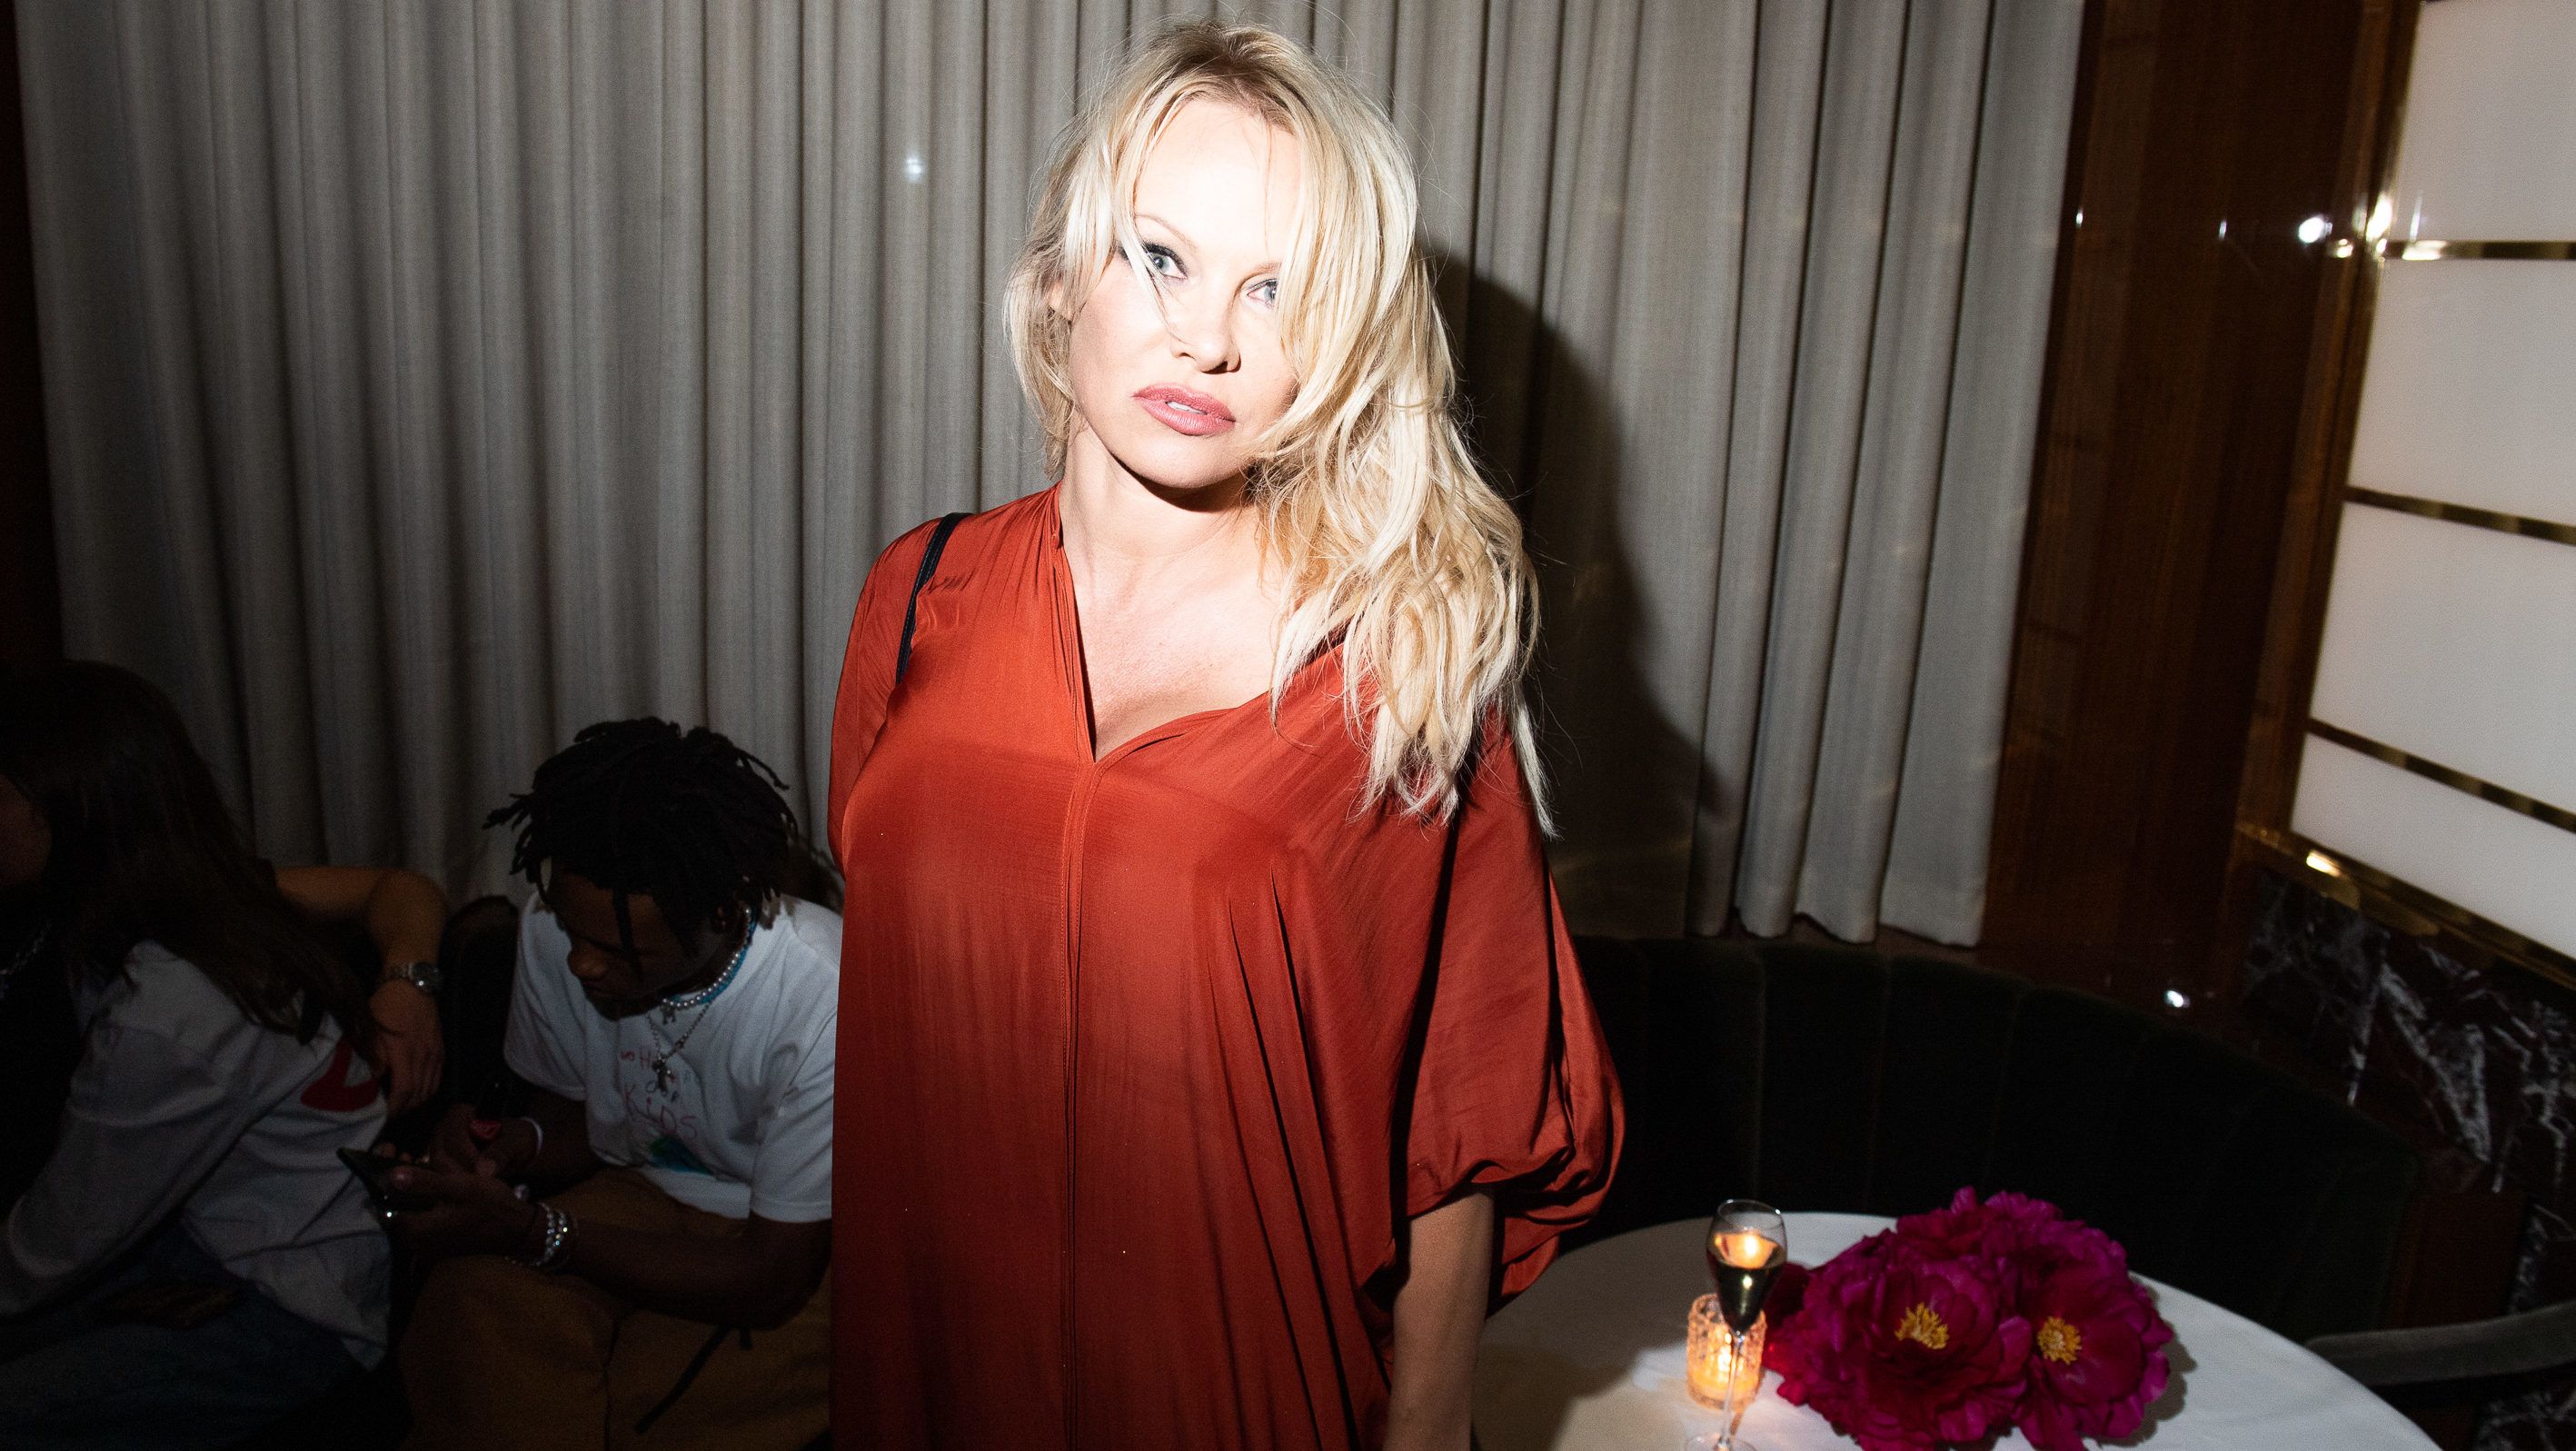 Pamela Andersonnak testőre van, mert fél az exétől, aki nem akarja elfogadni a szakítást